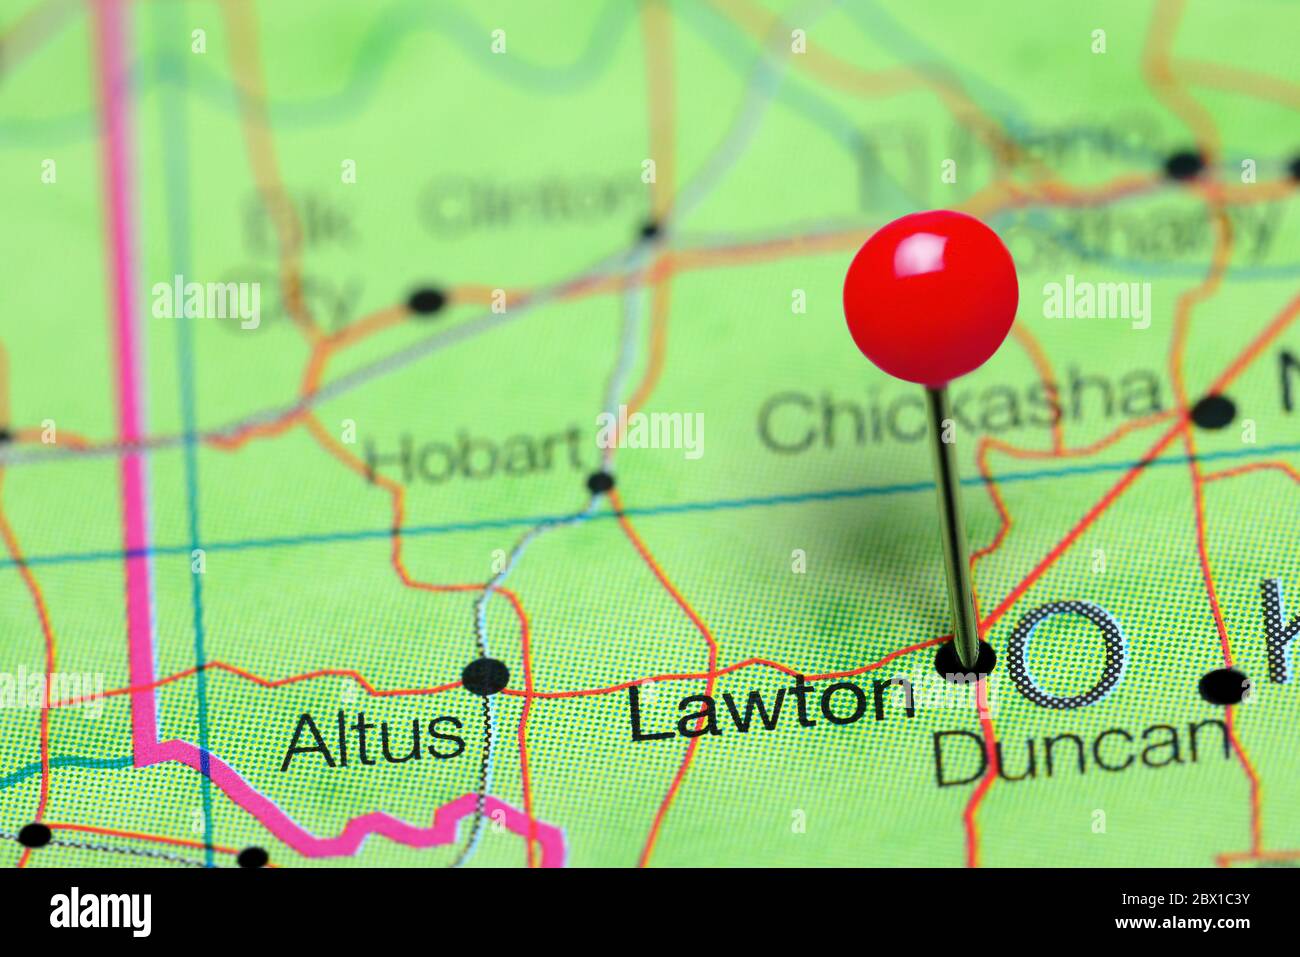 Lawton cubrió un mapa de Oklahoma, EE.UU Foto de stock